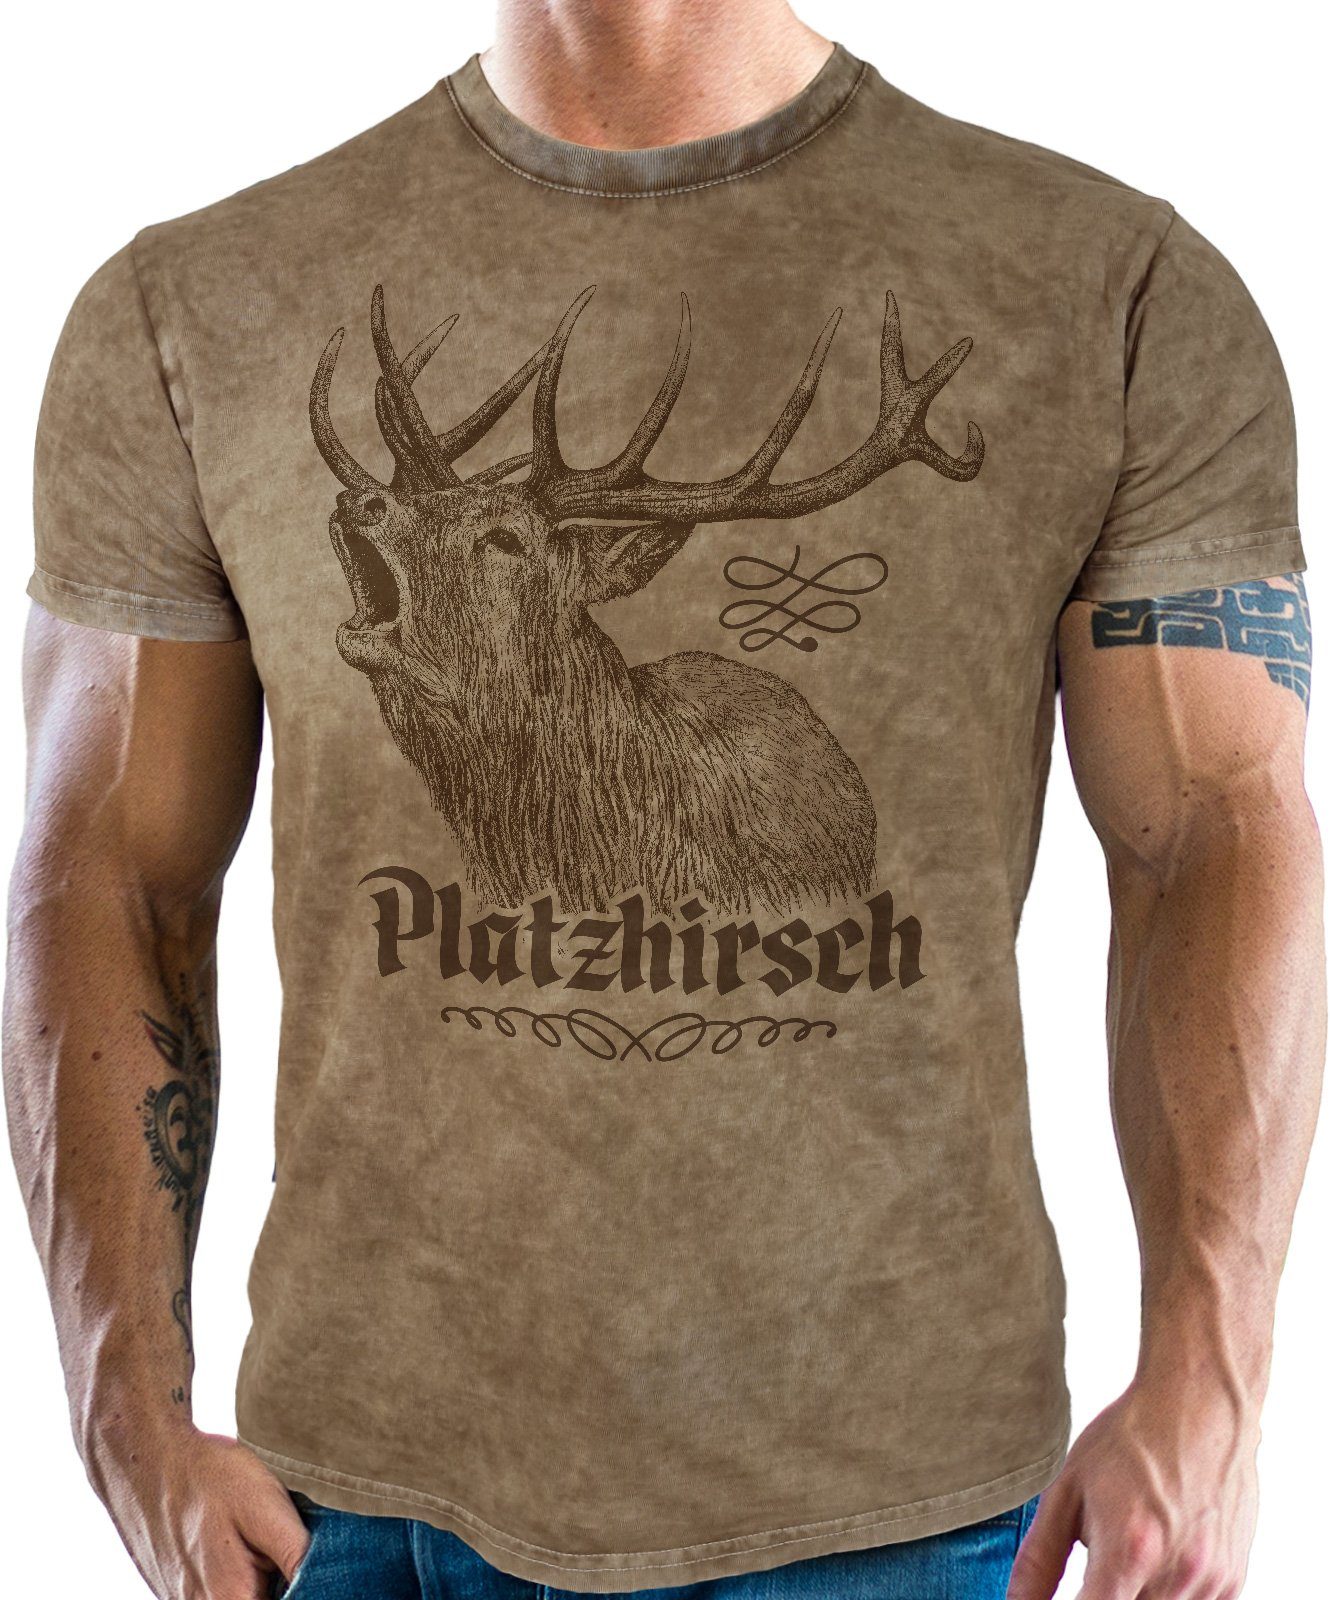 LOBO NEGRO® Trachtenshirt für Platzhirsch Bayern echte used vintage retro Look: Fans im washed